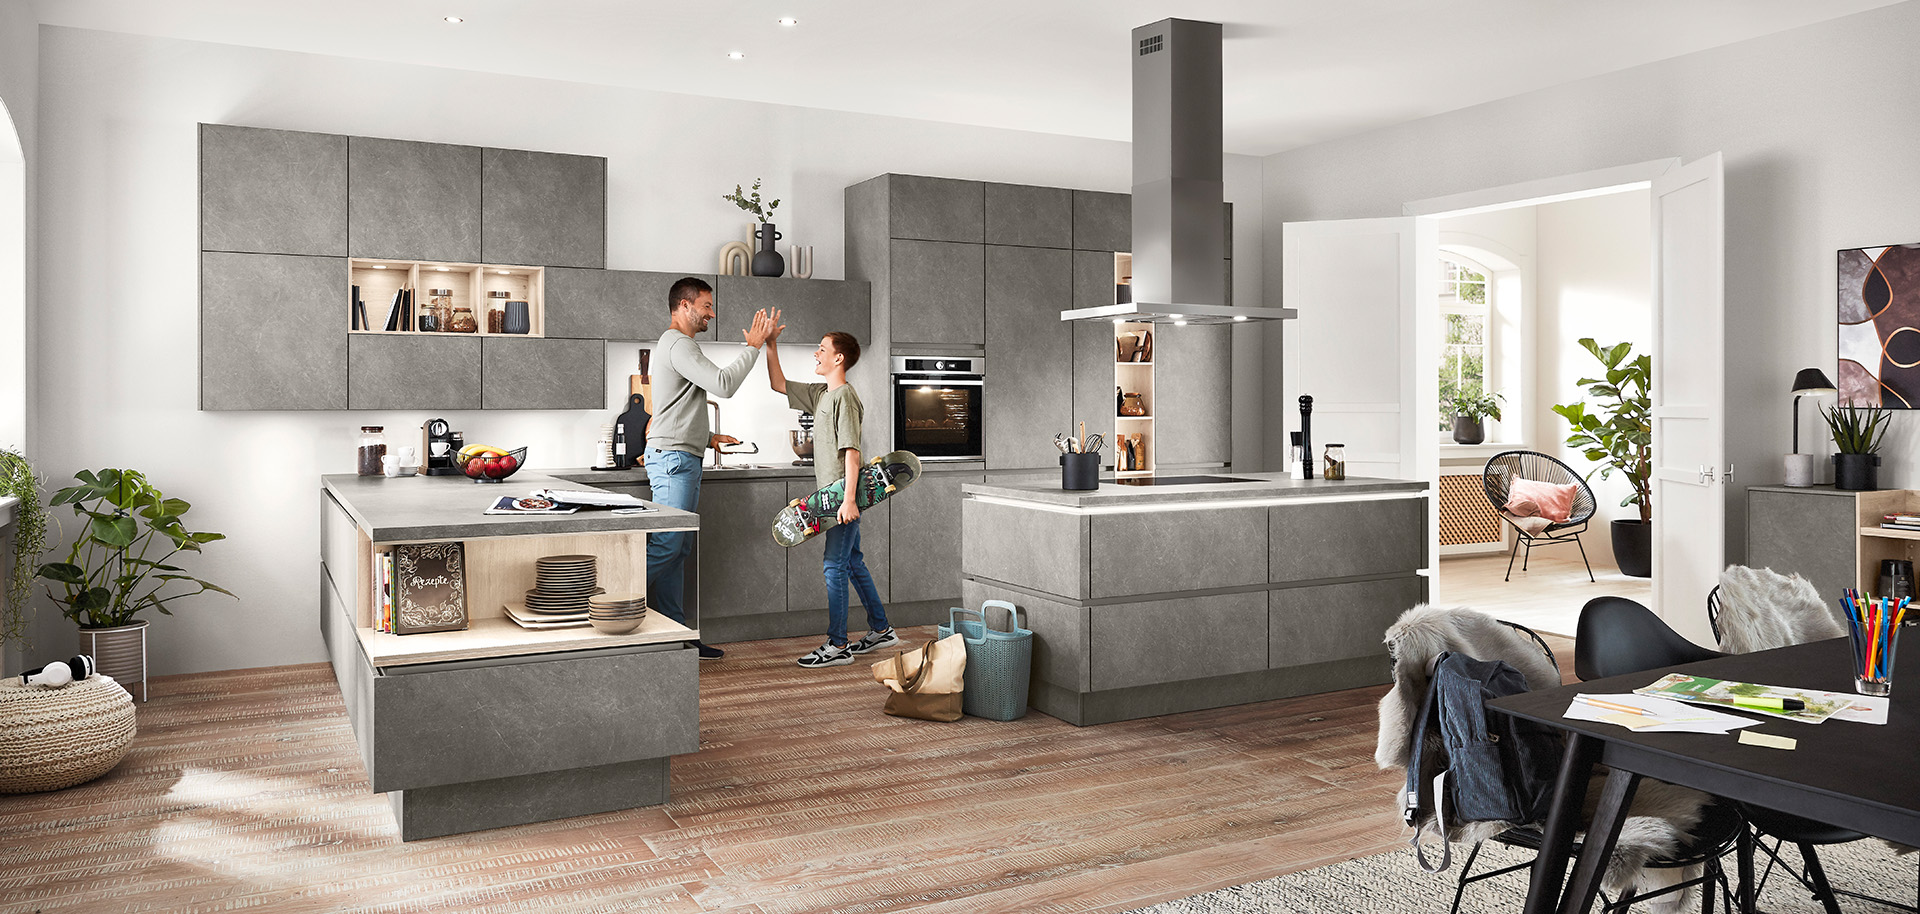 Una cucina moderna e spaziosa con una coppia impegnata in una conversazione allegra, circondata da mobili grigi eleganti e decorazioni sotto la luce naturale.